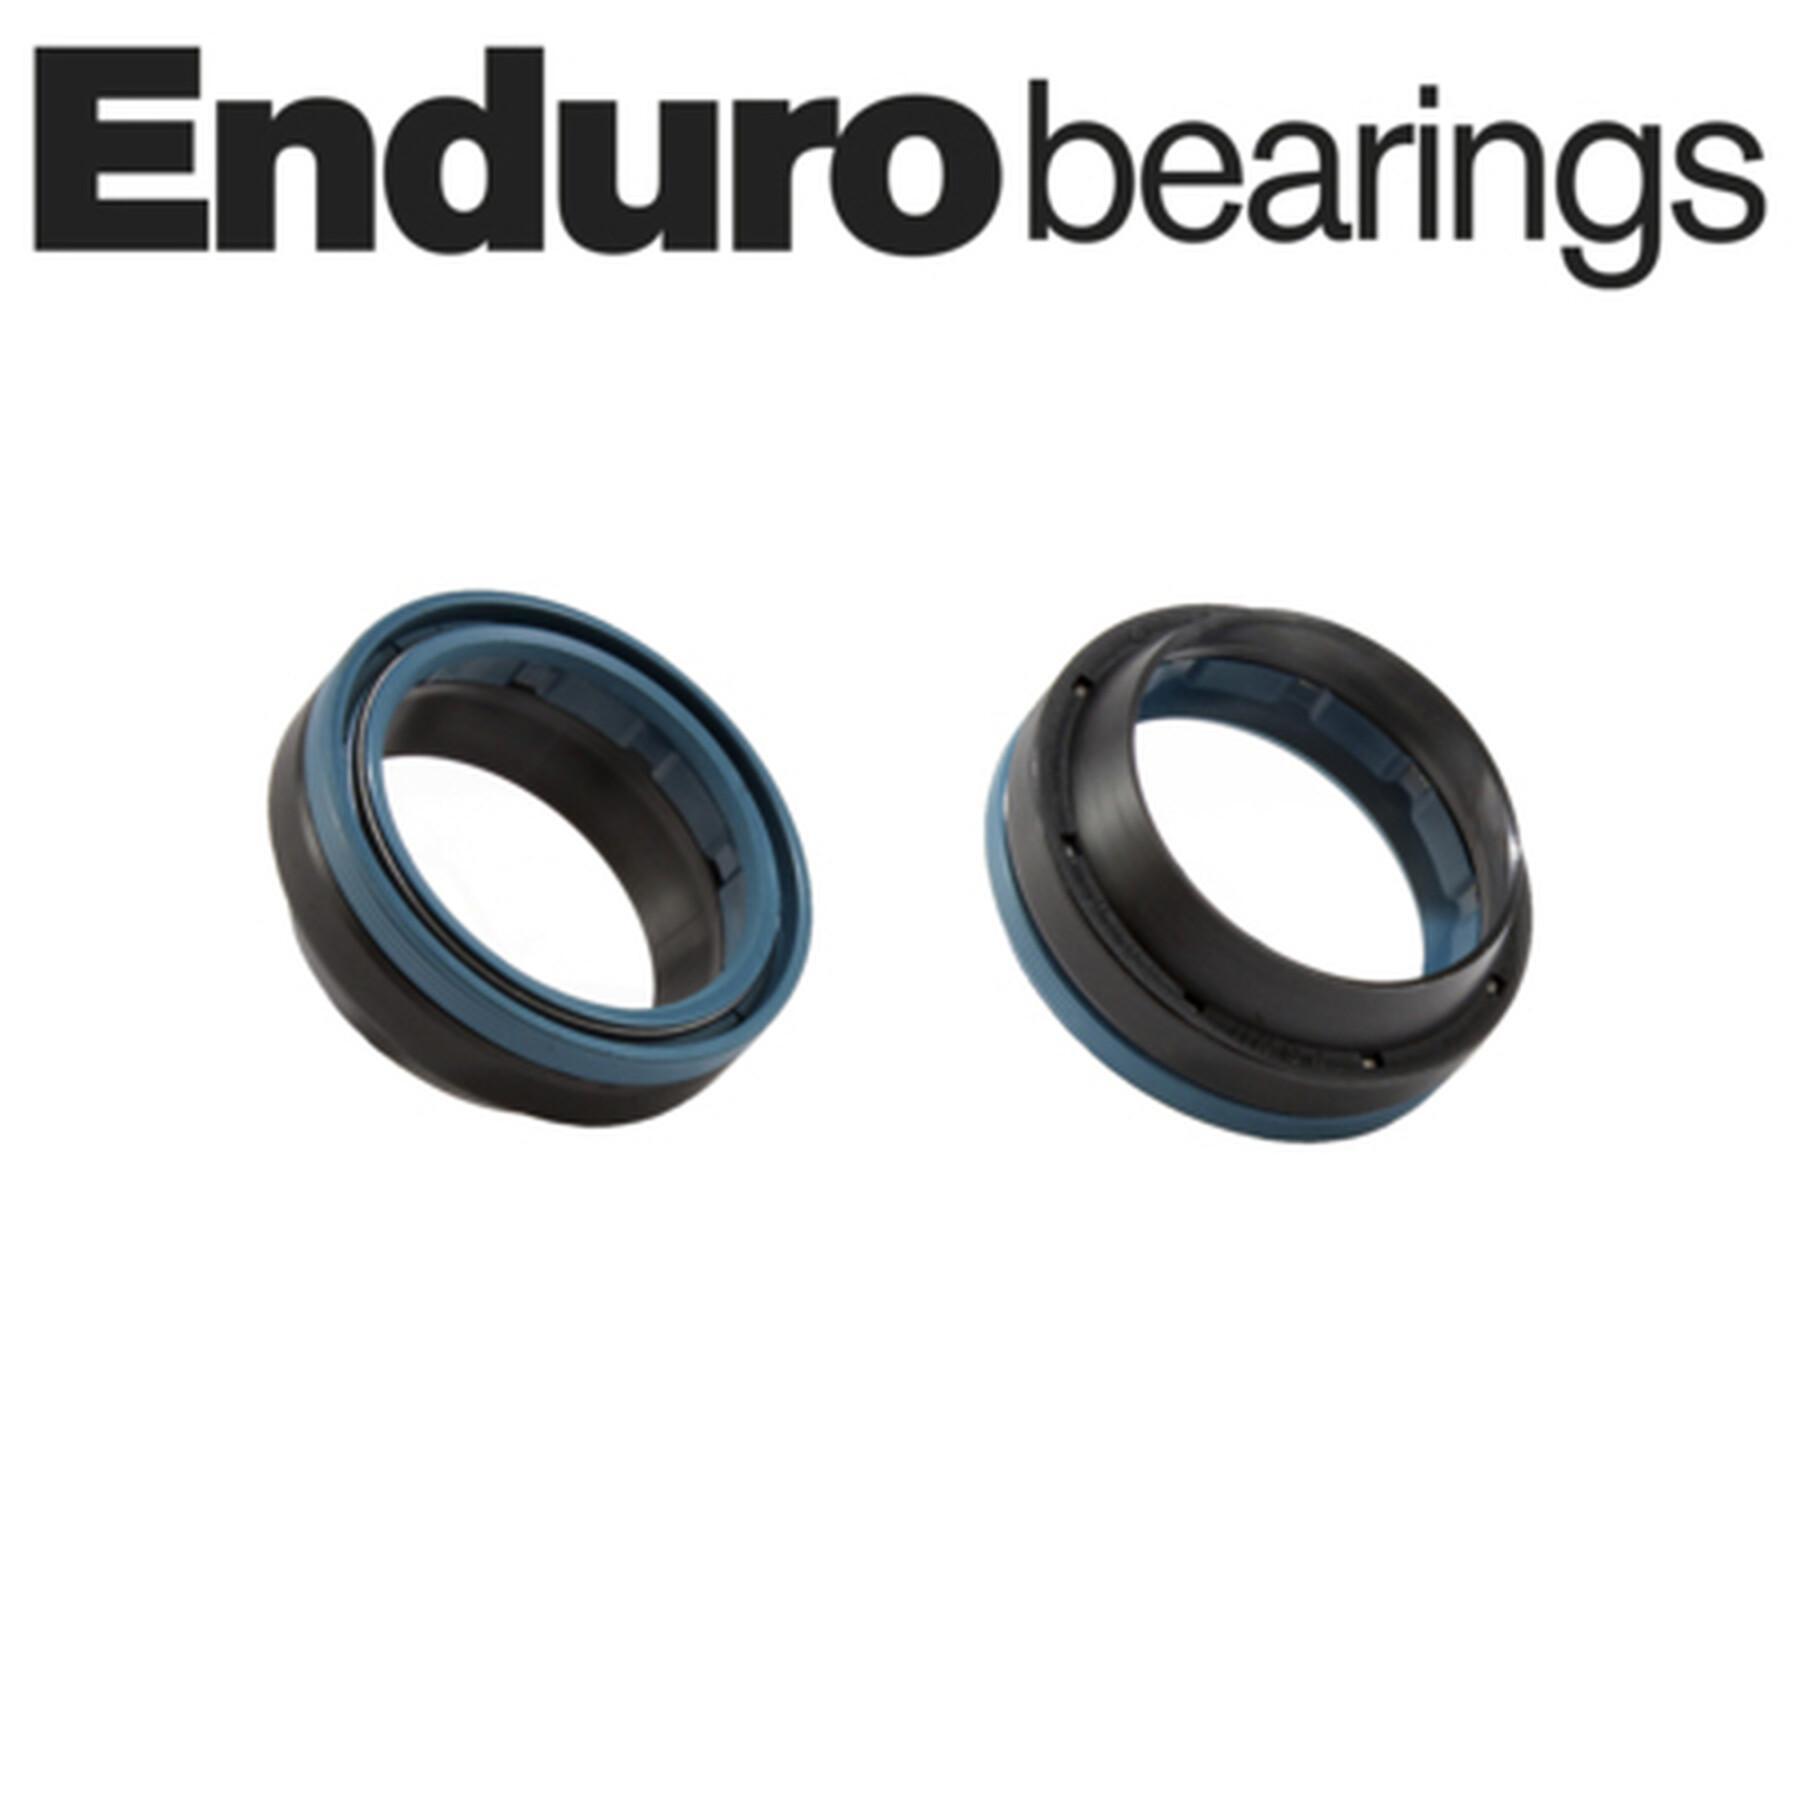 Rolamentos selados para garfos Enduro Bearings HyGlide Fork Seal Rockshox-32mm